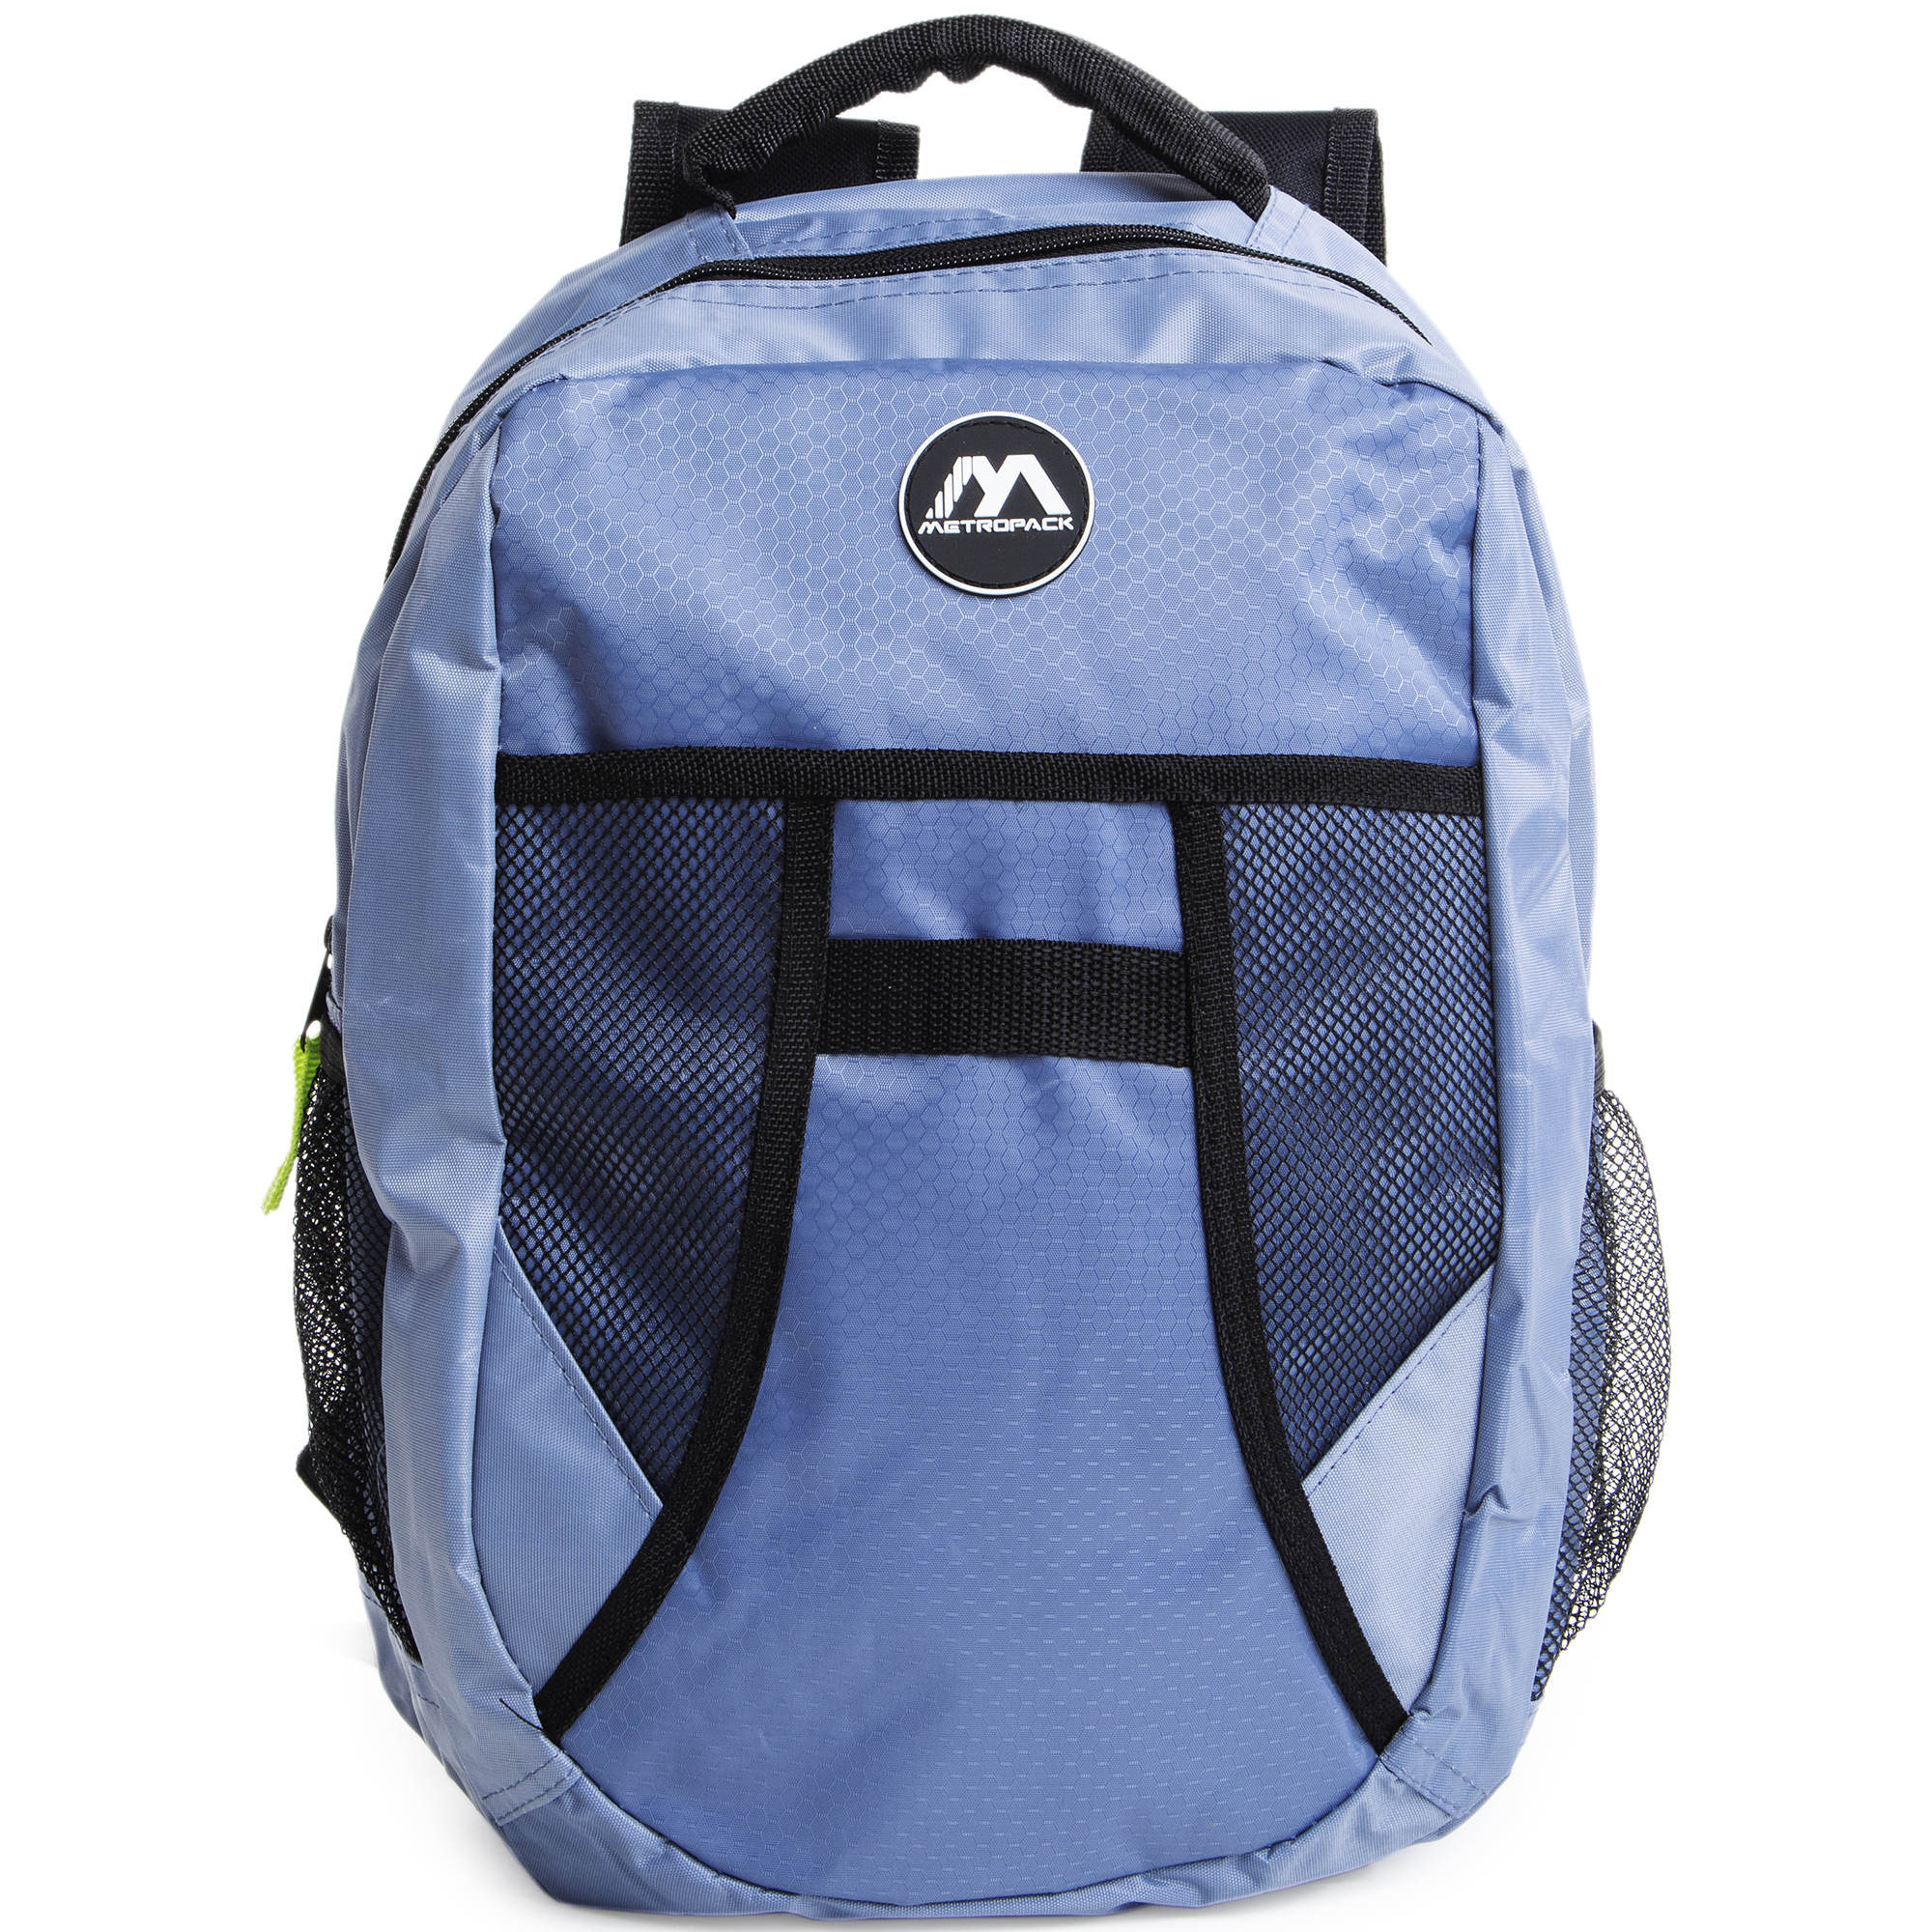 Mesh Pocket Backpack 16in